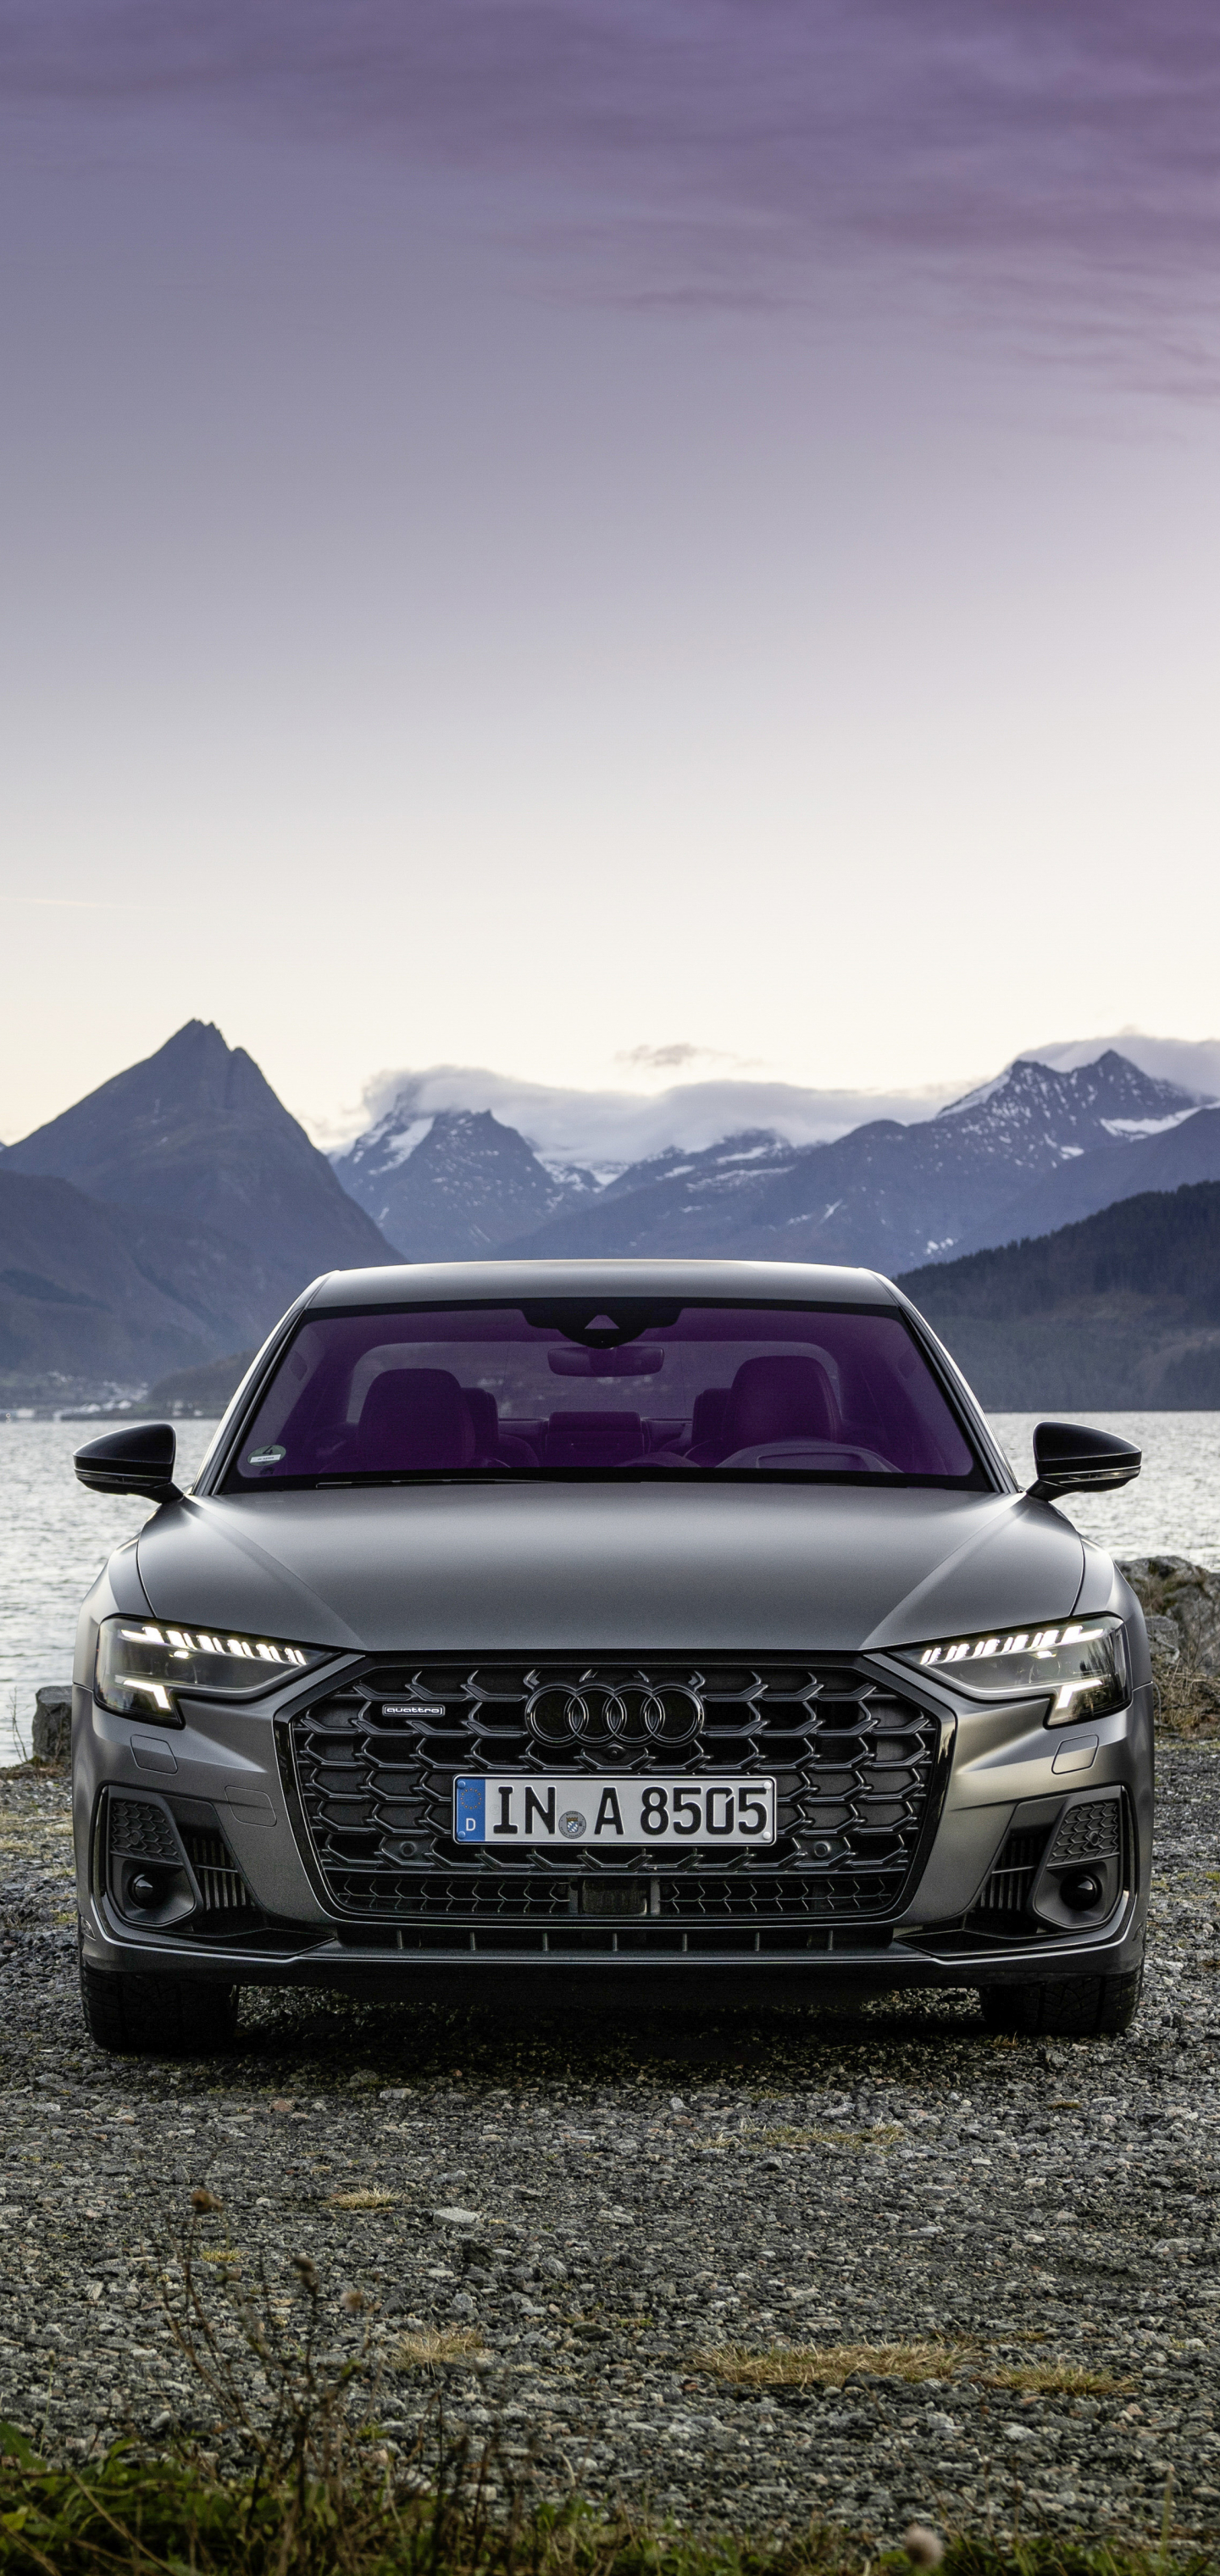 Descargar las imágenes de Audi A8 Quattro Línea S gratis para teléfonos  Android y iPhone, fondos de pantalla de Audi A8 Quattro Línea S para  teléfonos móviles